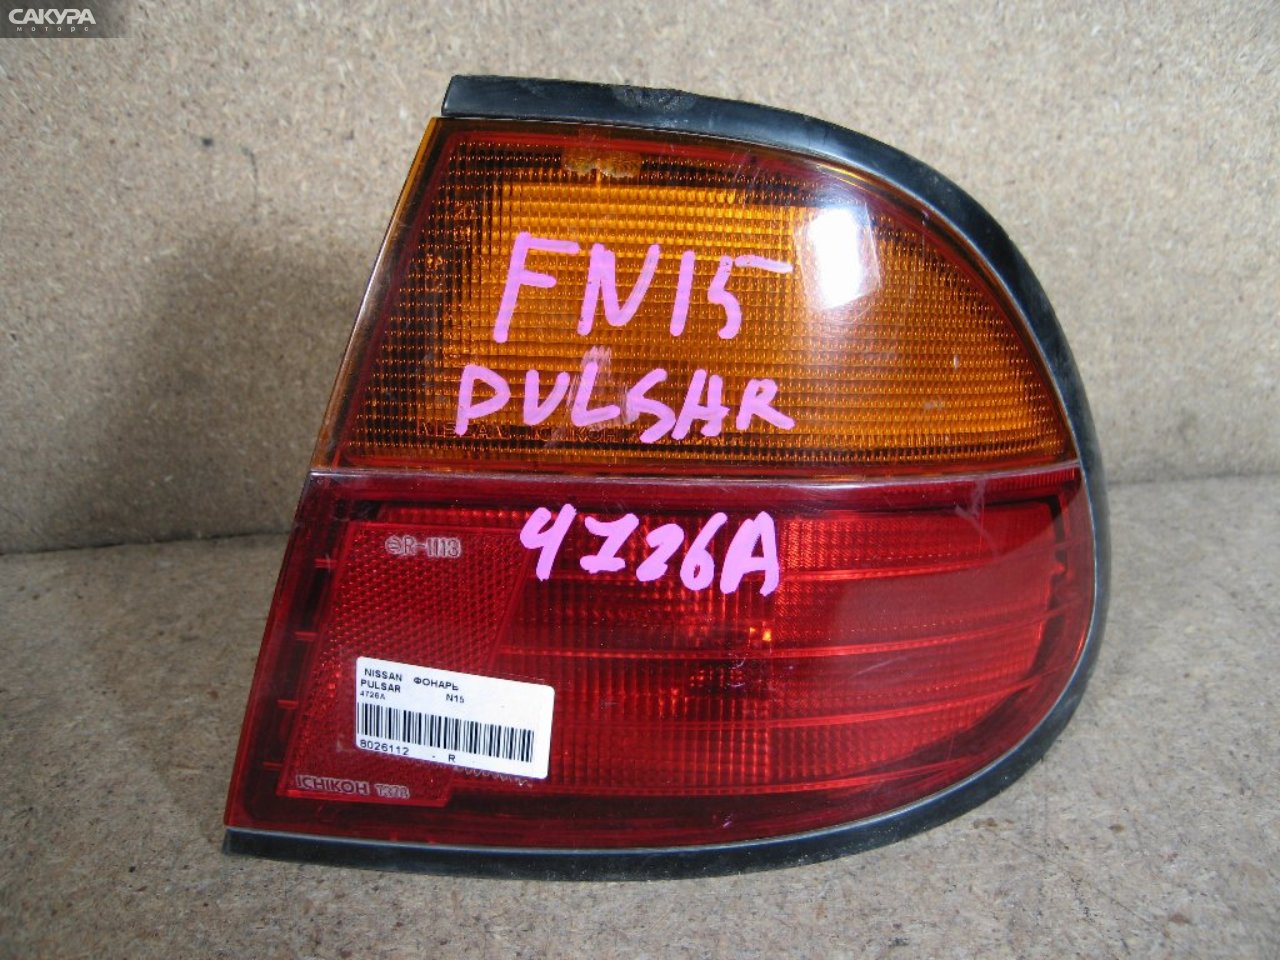 Фонарь стоп-сигнала правый Nissan Pulsar FN15 4726: купить в Сакура Абакан.